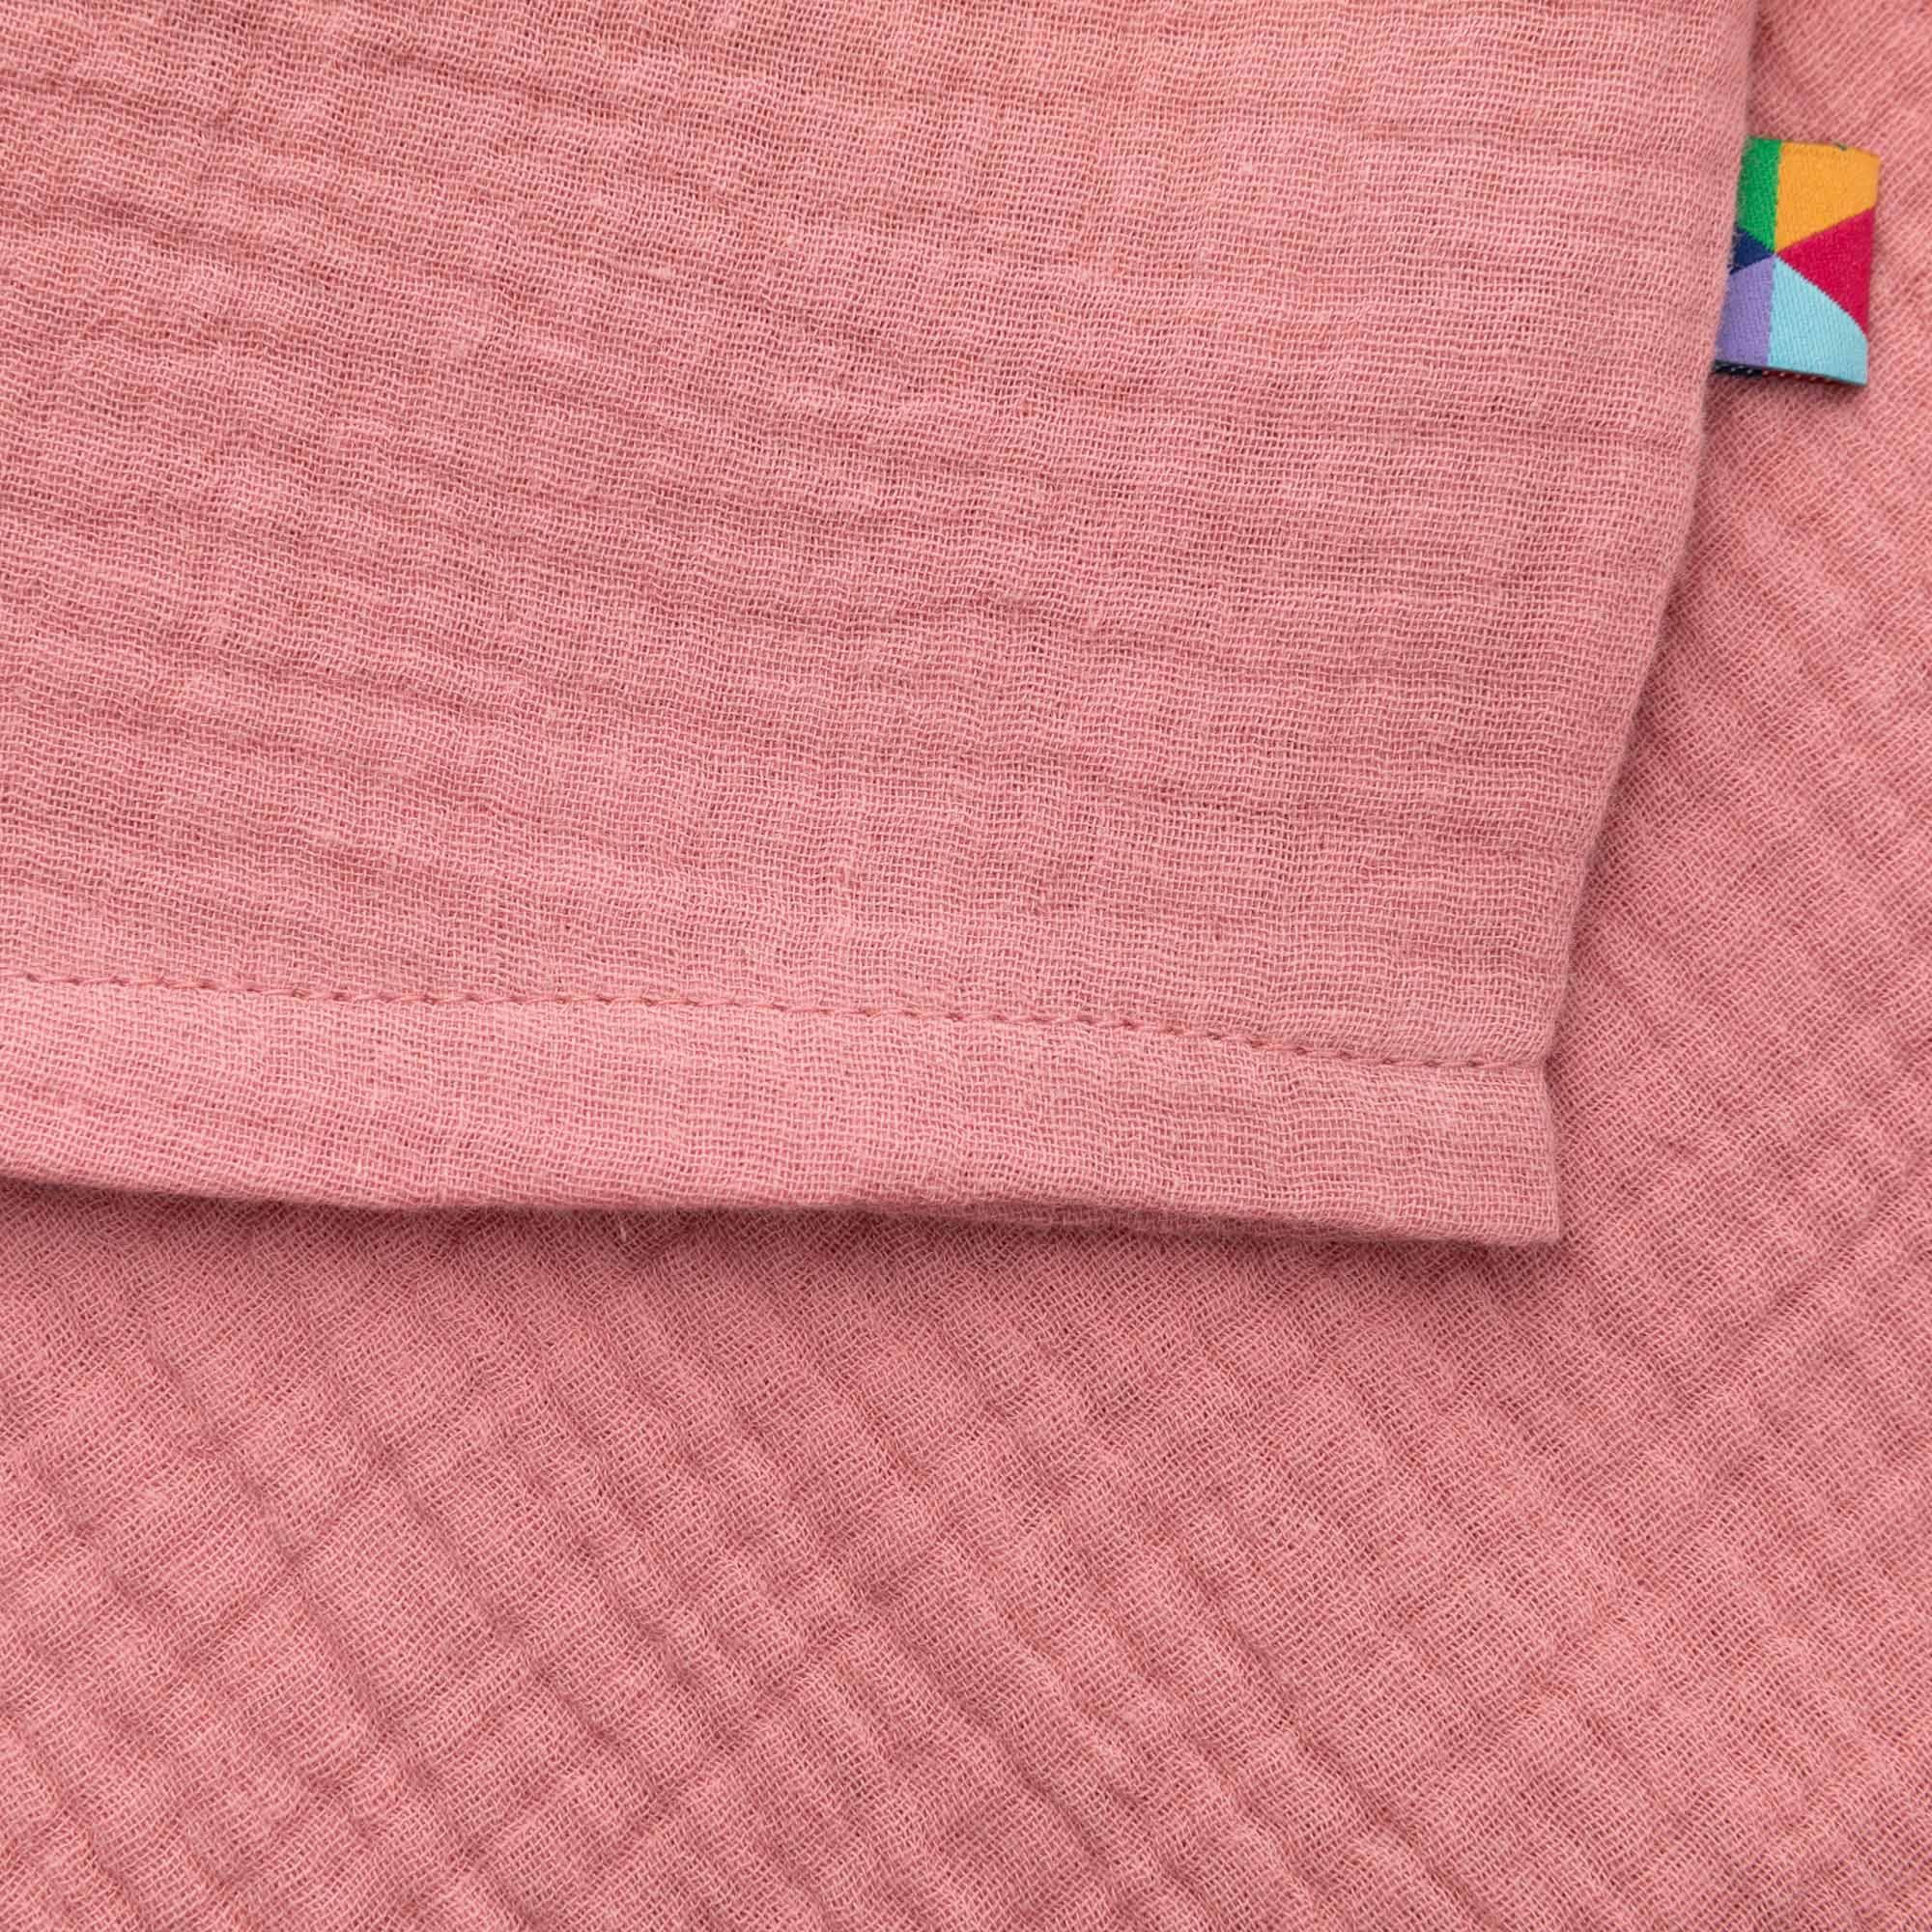 Różowa koszulka muślinowa